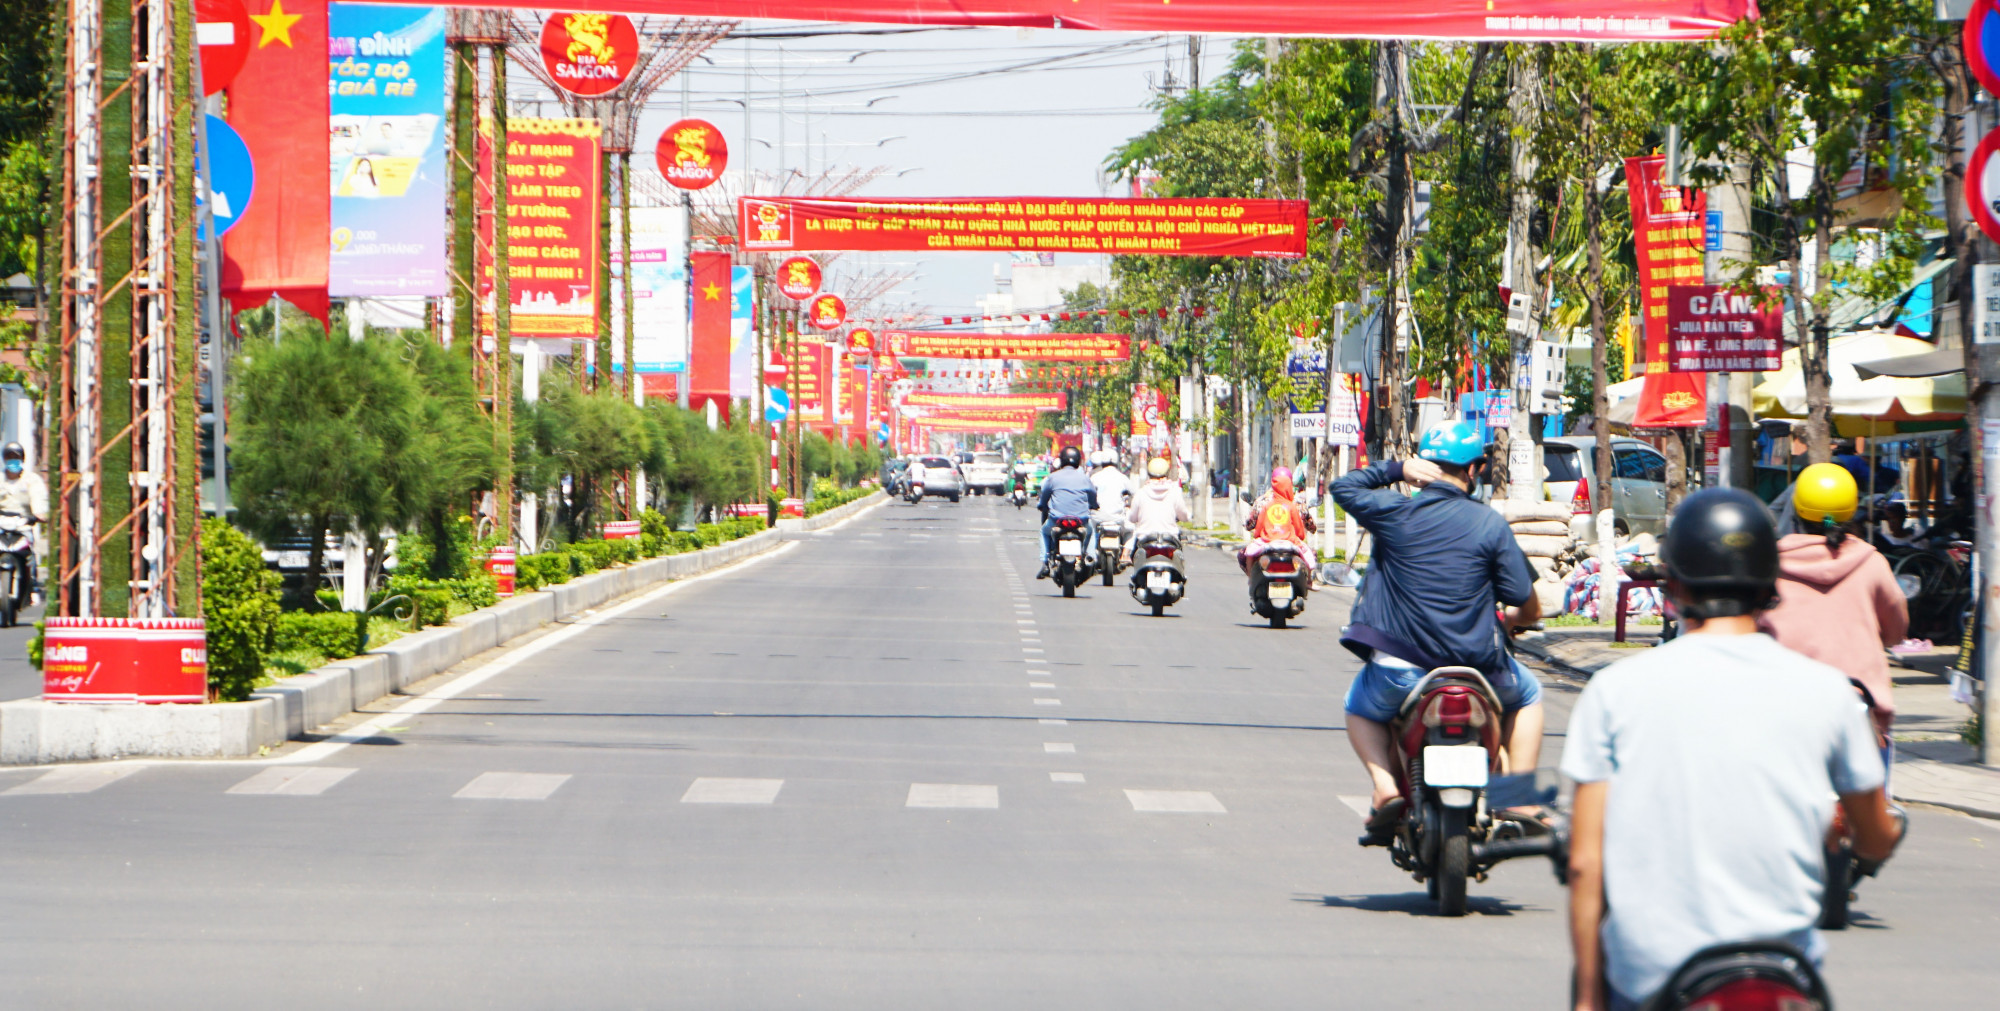 Tỉnh Quảng Ngãi đang nỗ lực cải cách thủ tục hành chính trong đó có thủ tục hành chính liên quan đến đất đai